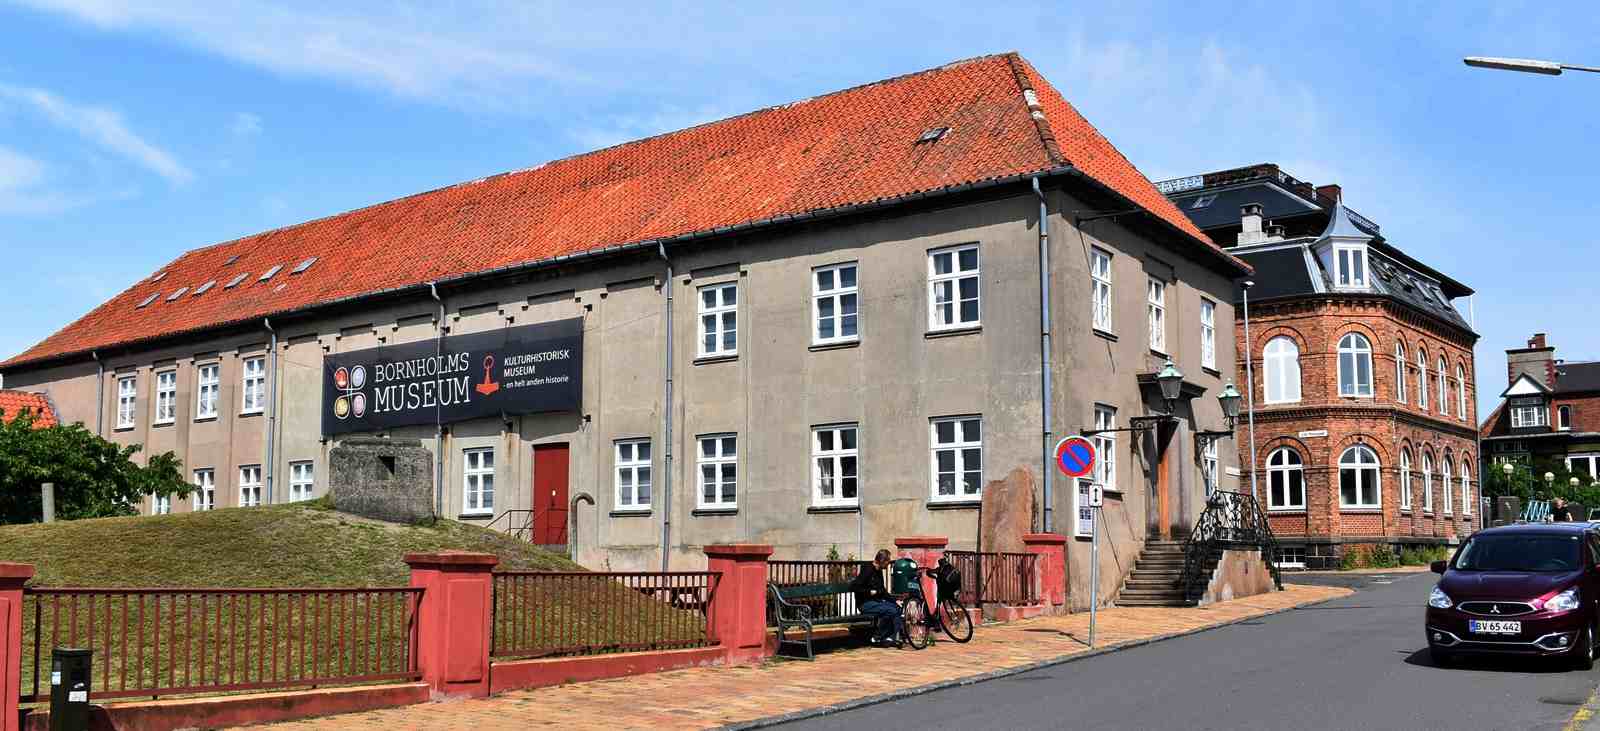 Bornholms Museum, Bornholm